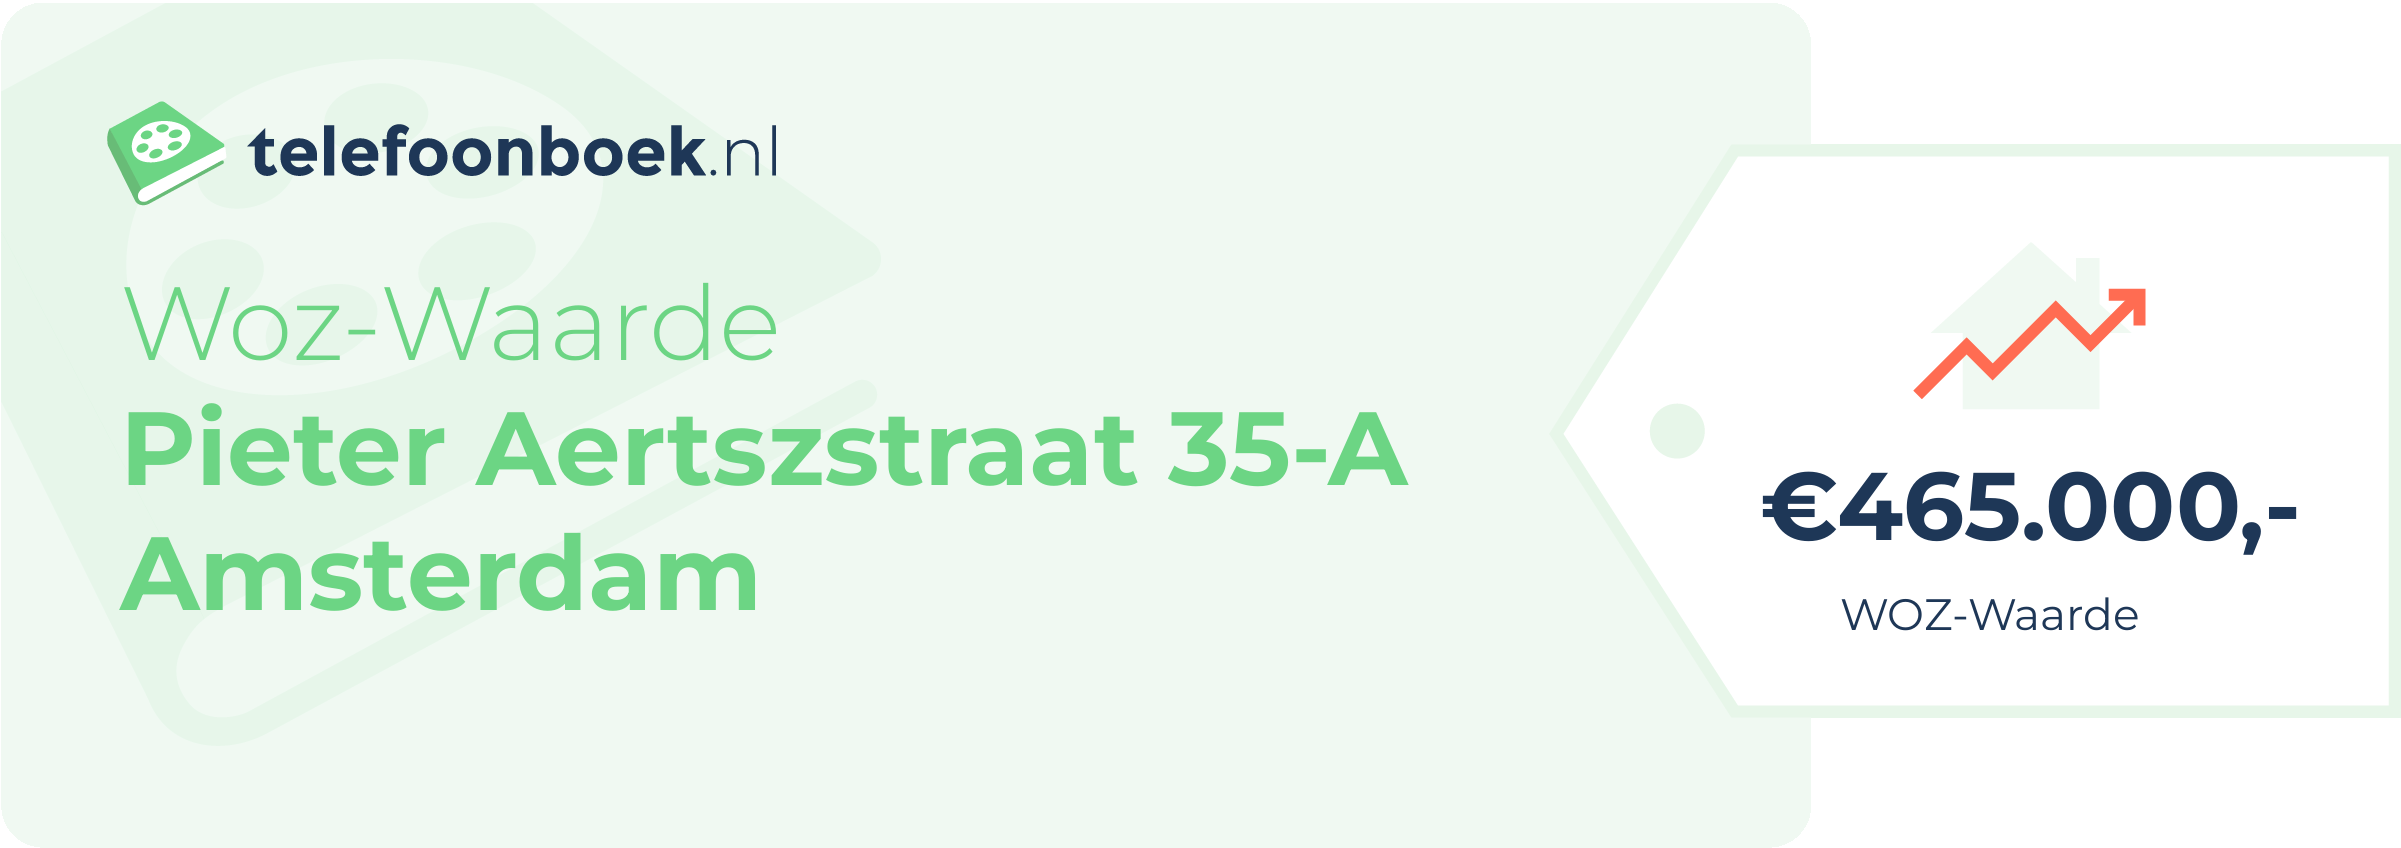 WOZ-waarde Pieter Aertszstraat 35-A Amsterdam